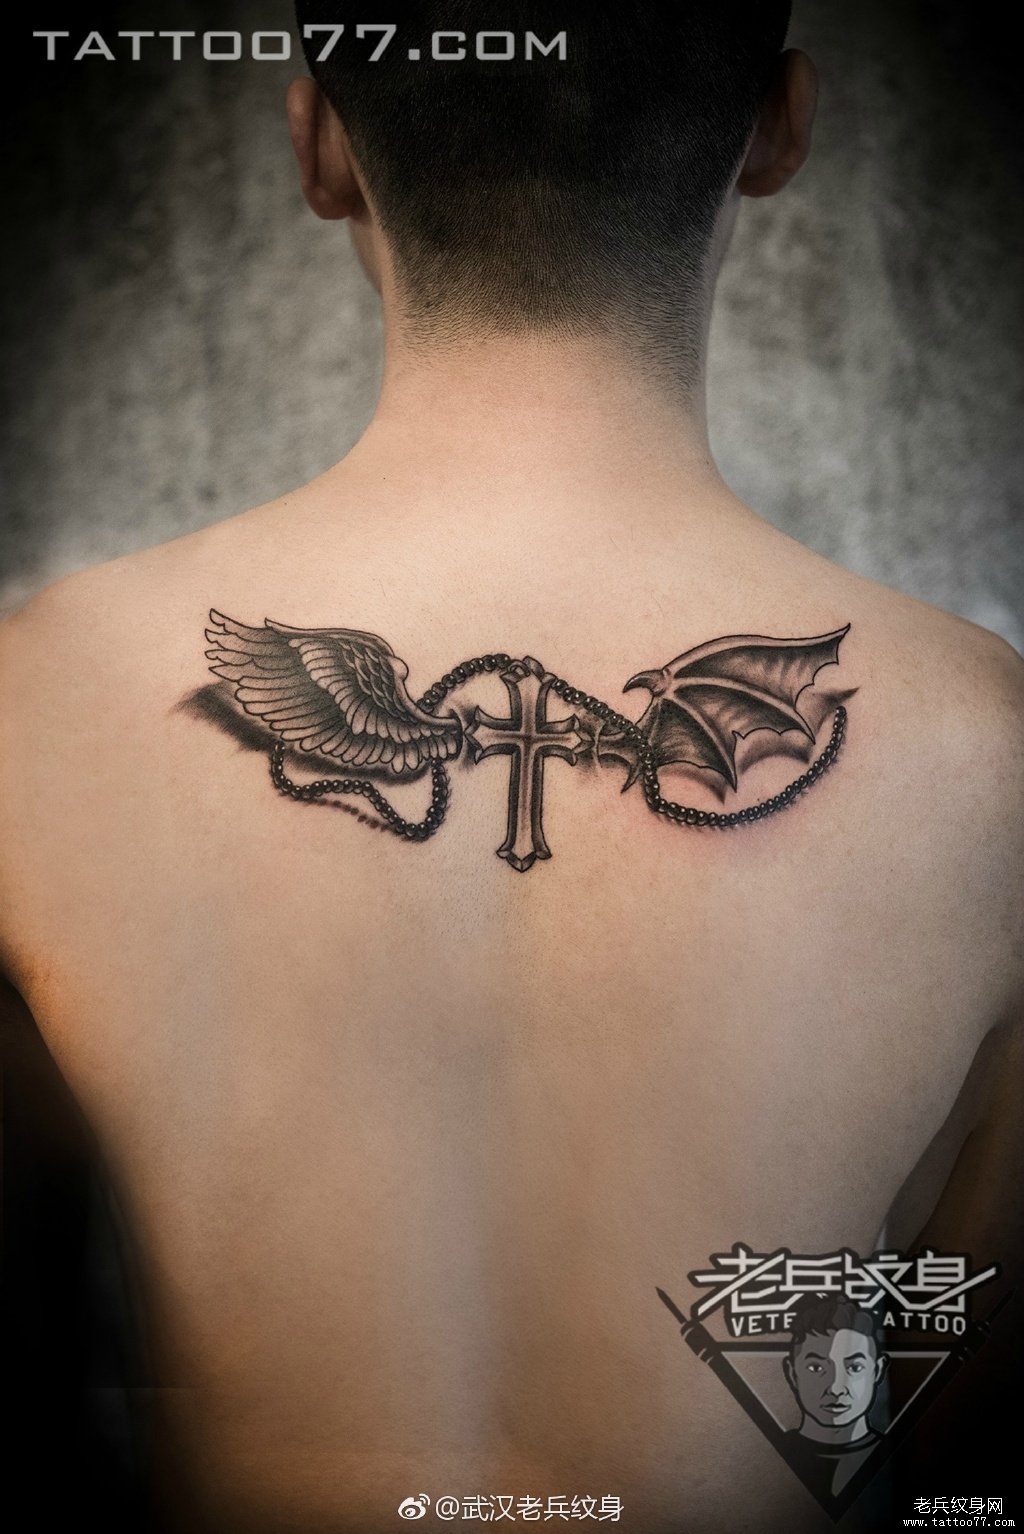 后背天使恶魔翅膀纹身图案作品